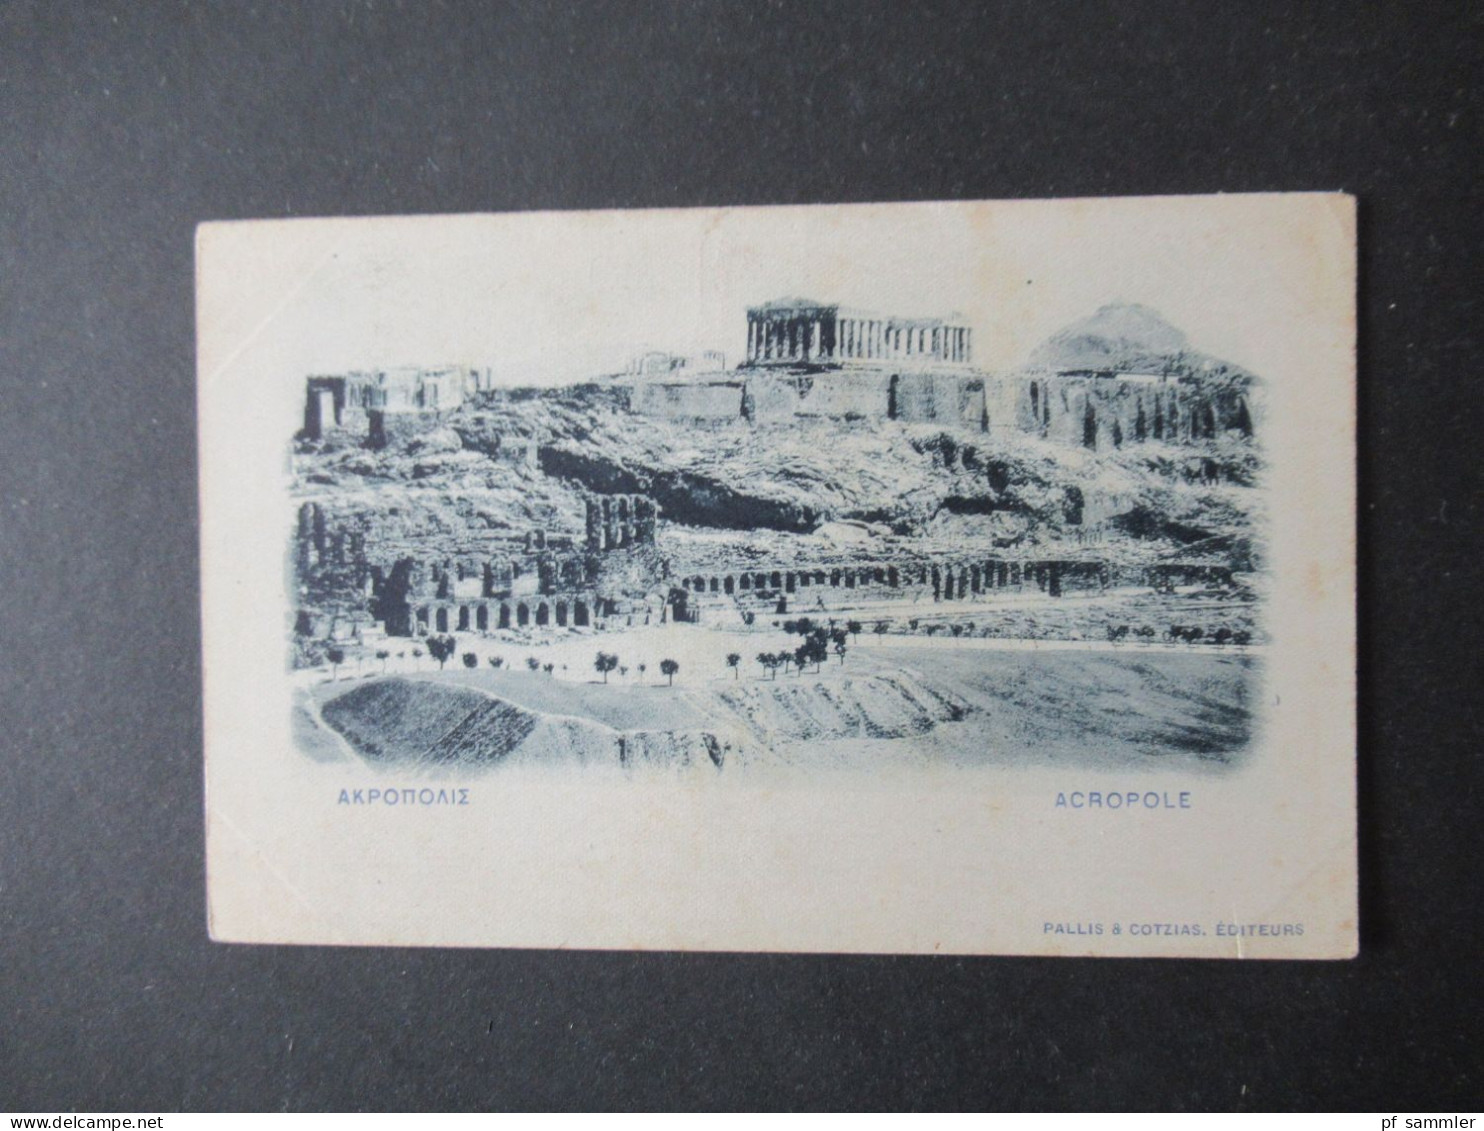 Griechenland Um 1900 Ganzsache Bild PK Carte Postale Reponse / Acropole Pallis & Cotzias Editeurs Ungebraucht! - Enteros Postales